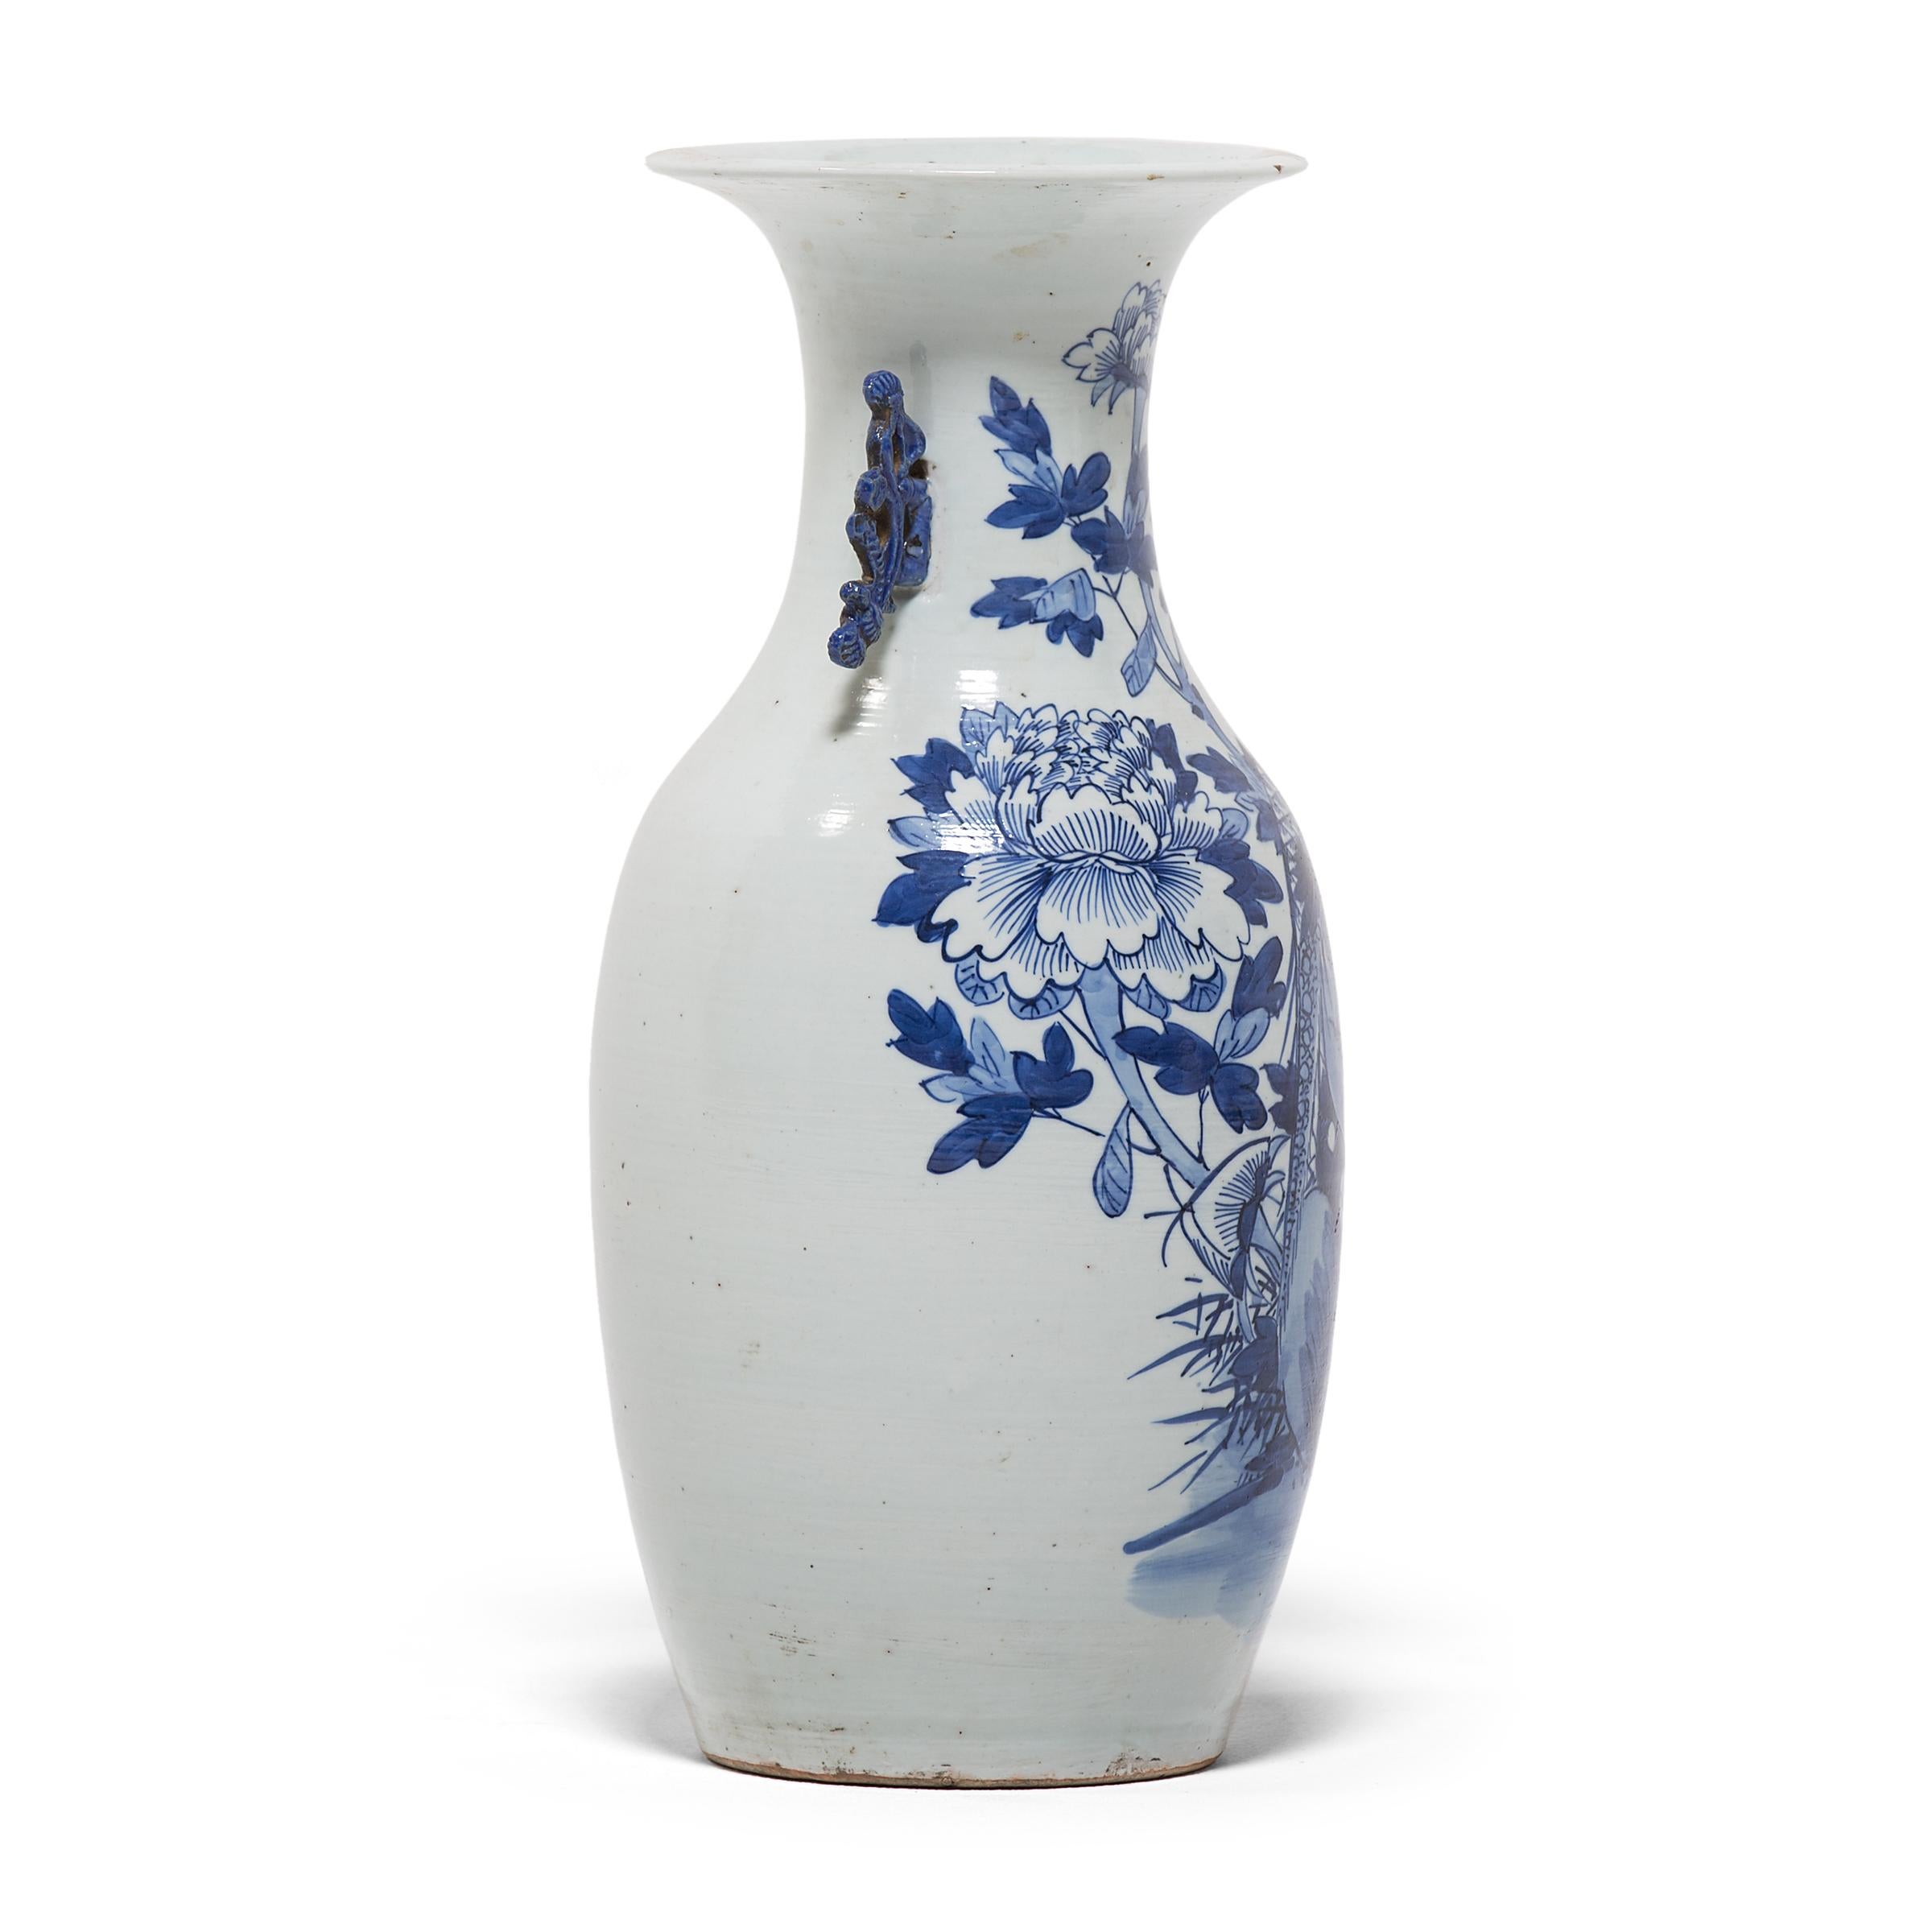 Glazed Chinese Blue and White Peony Fantail Vase, c. 1850